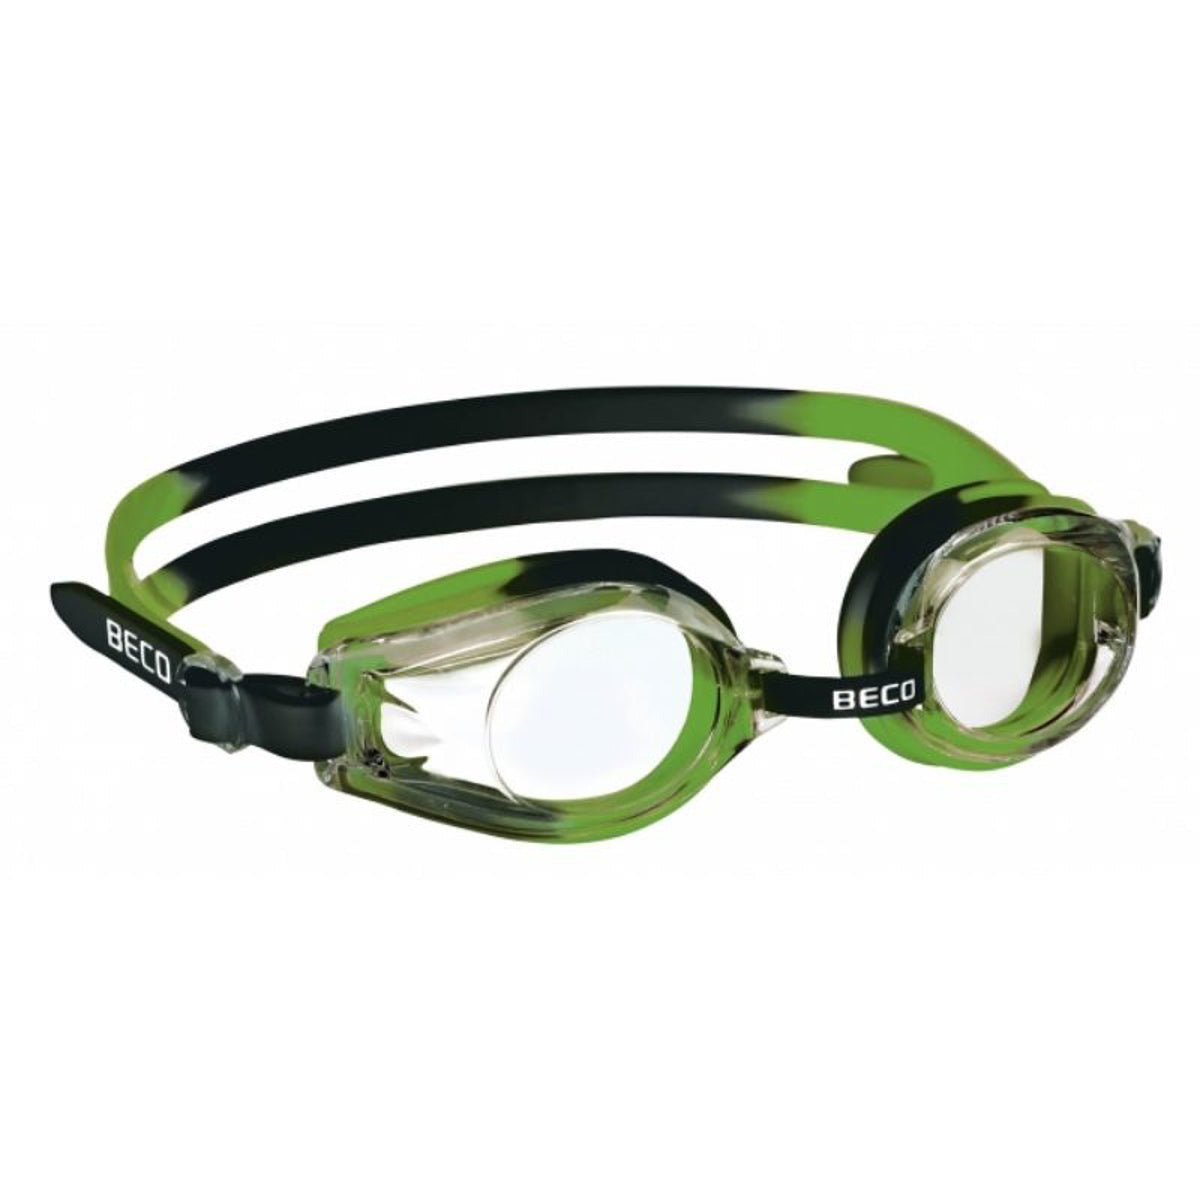 BECO "Rimini" Svømmebriller til børn +12 år - Grøn/Sort